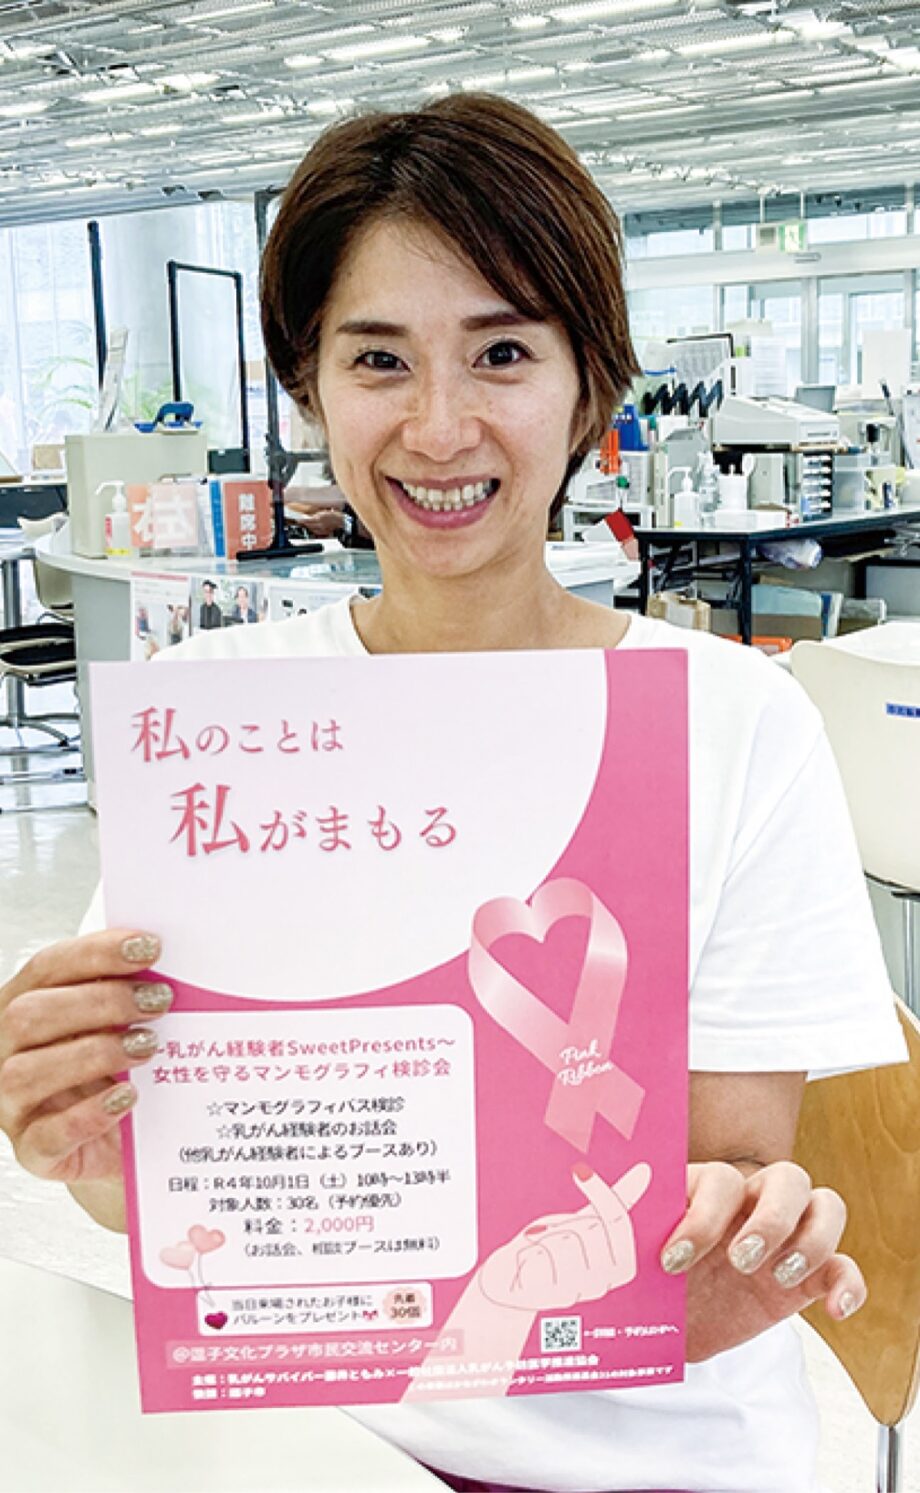 女性を守るマンモグラフィー検診会「乳がん早期発見につなげて」逗子市在住藤井さんが企画